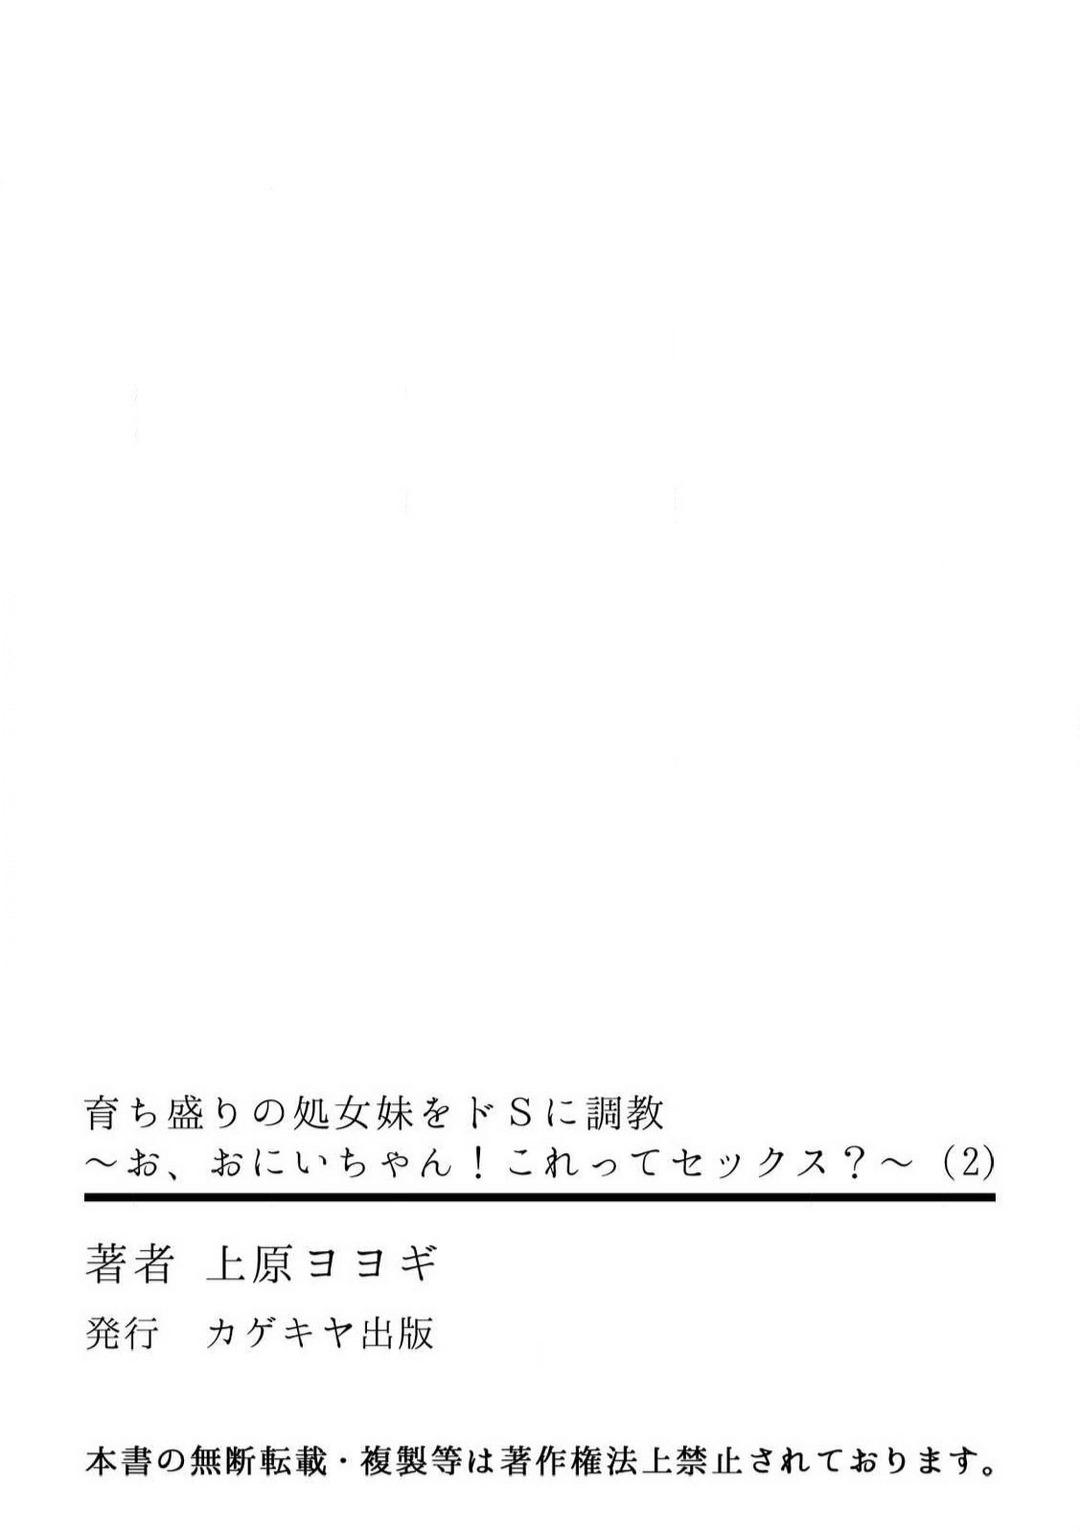 [Uehara Yoyogi] Sodachi-Mori no Shojo Imōto o Doesu ni Chōkyō 〜 O, O Niichan! Korette Sekkusu?〜Chp.1-2 63